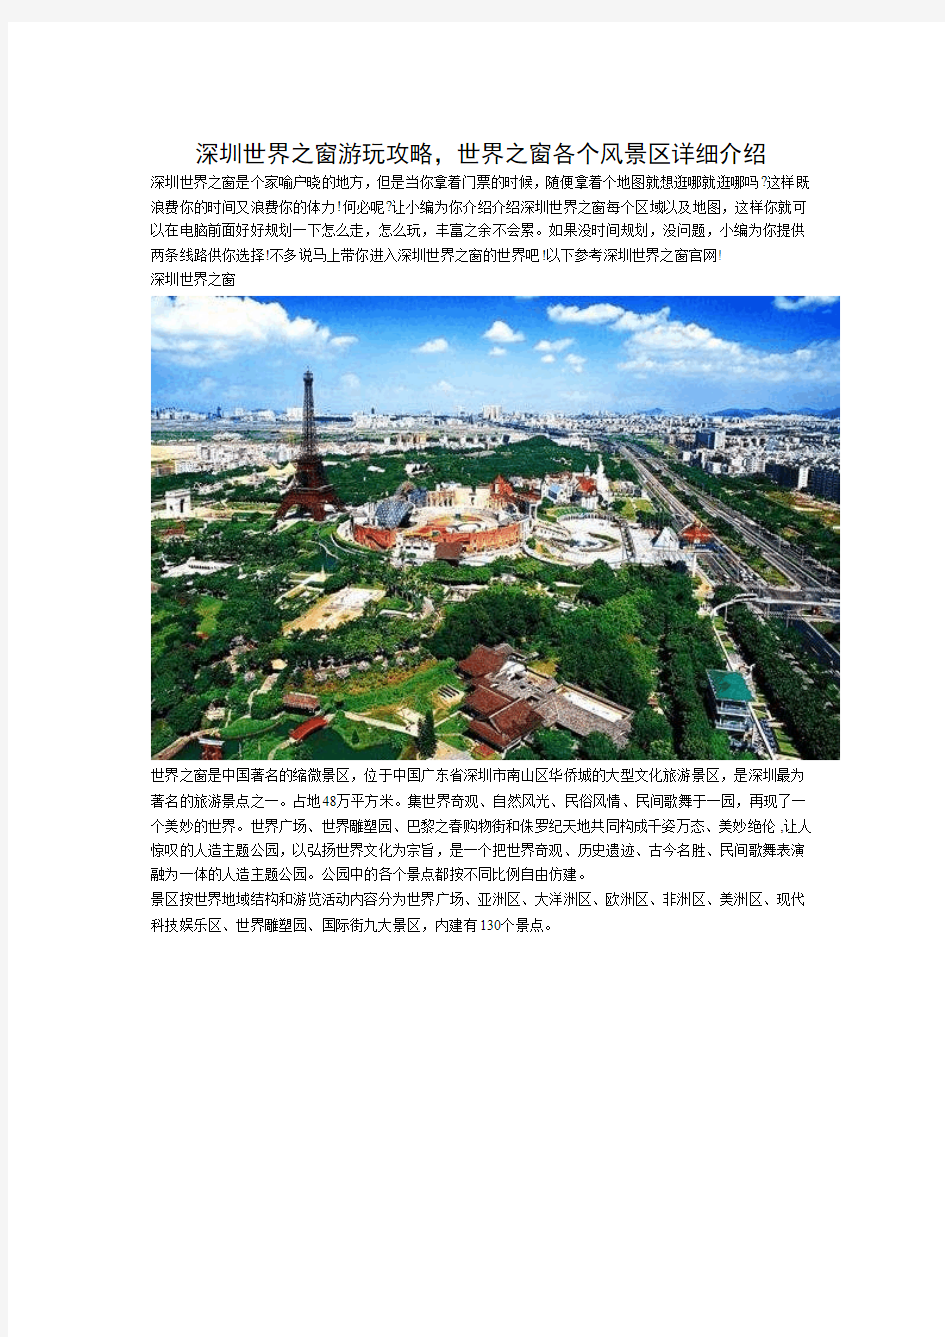 深圳世界之窗游玩攻略,世界之窗各个风景区详细介绍